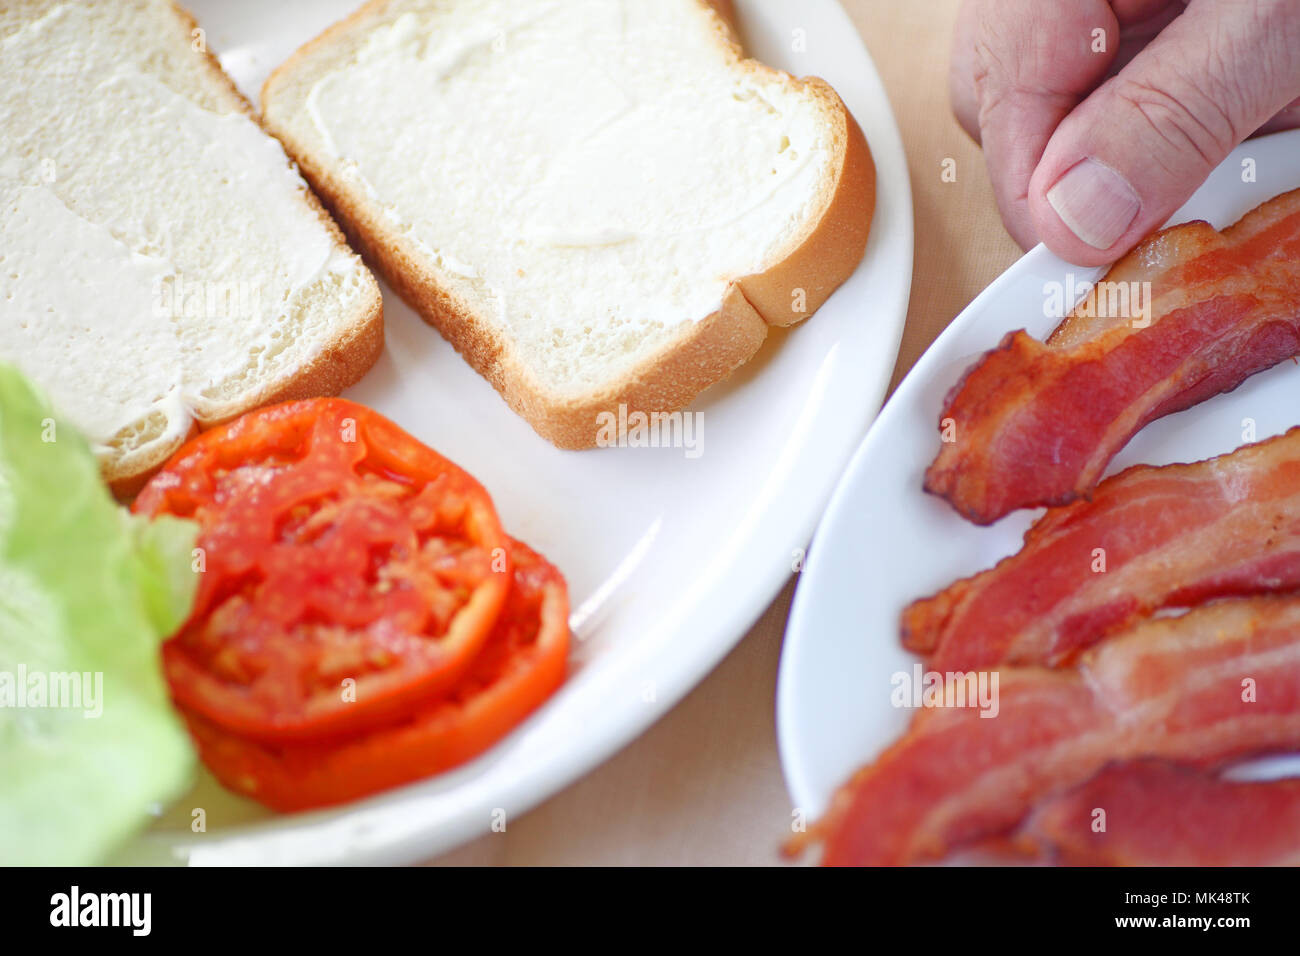 Un homme s'apprête à mettre sur pied un bacon, laitue et tomate sandwich sur pain blanc. Banque D'Images